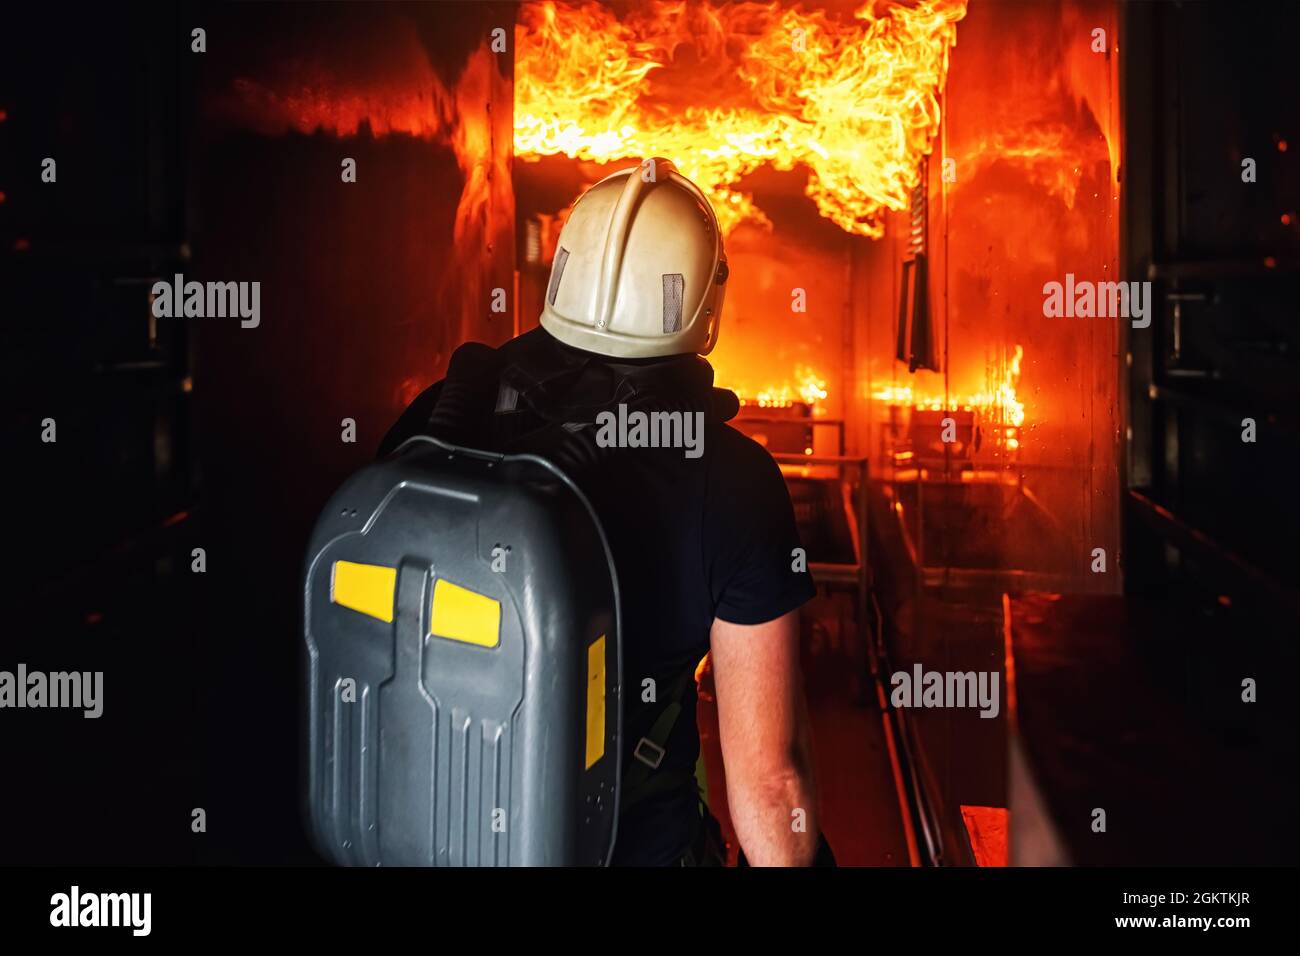 Feuerwehrleute während des Trainings, ein Feuer in einem Auto mit Schaum zu löschen  Stockfotografie - Alamy